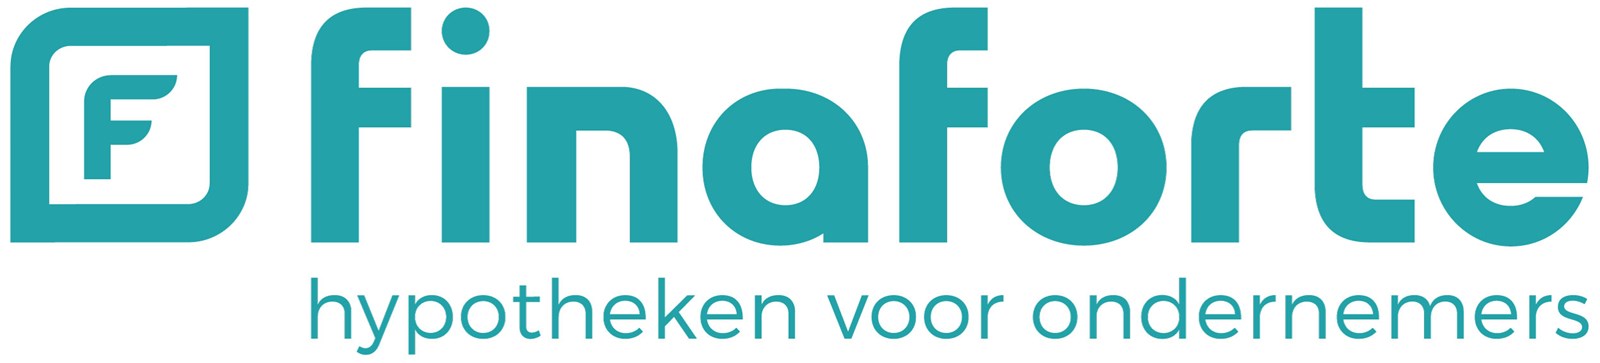 Logo van Finaforte